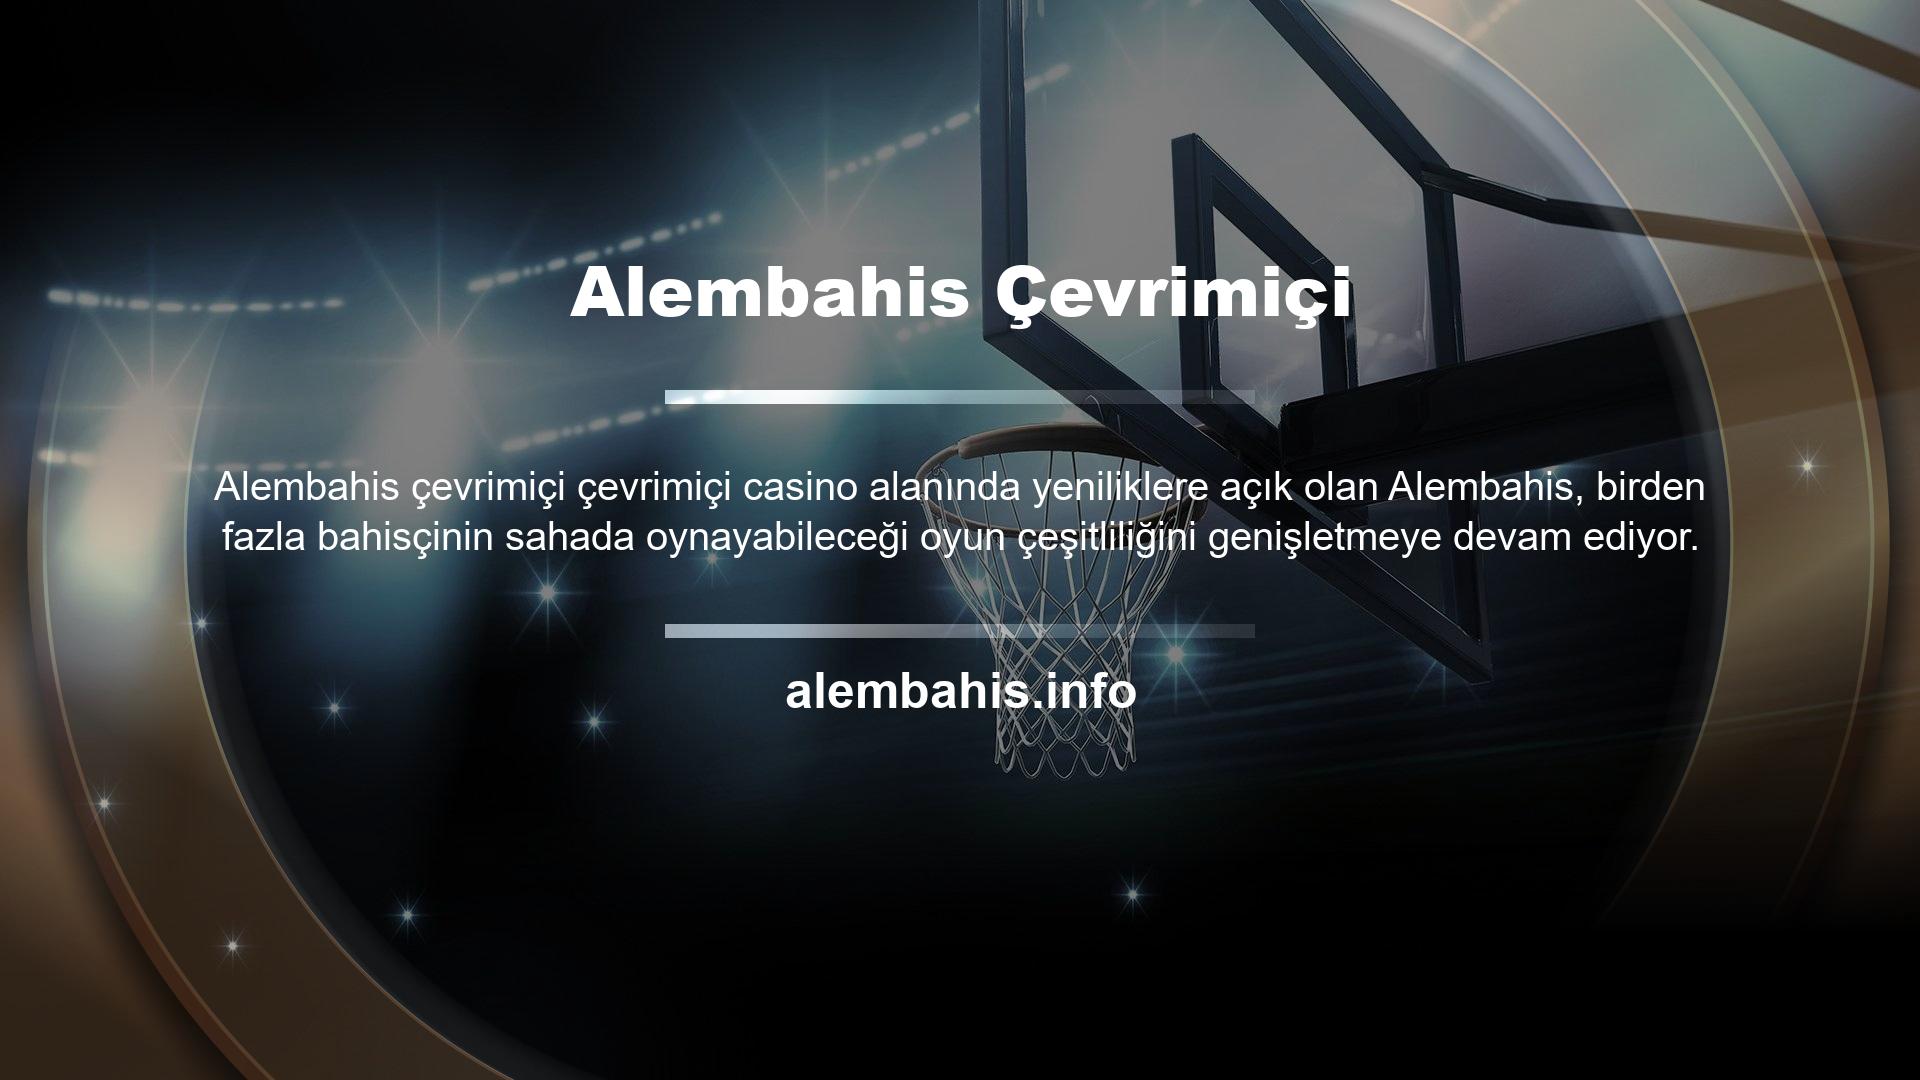 Türkiye'de hiçbir zaman kalıcı bir adresi olmayan casino hizmetleri ve web siteleri için yeni bir alan adı edinmek çok önemlidir